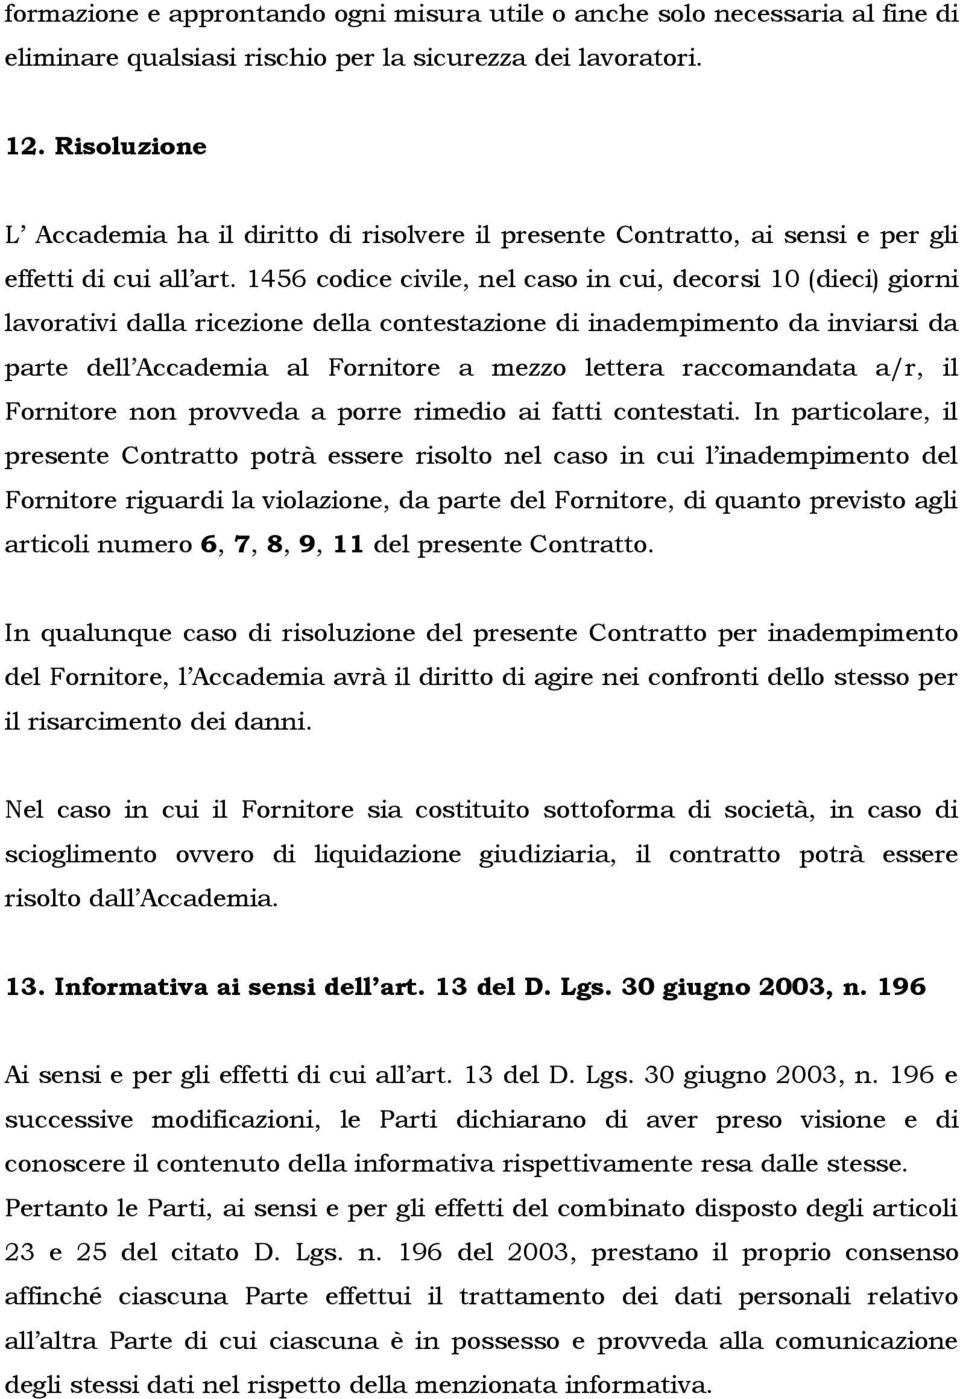 1456 codice civile, nel caso in cui, decorsi 10 (dieci) giorni lavorativi dalla ricezione della contestazione di inadempimento da inviarsi da parte dell Accademia al Fornitore a mezzo lettera